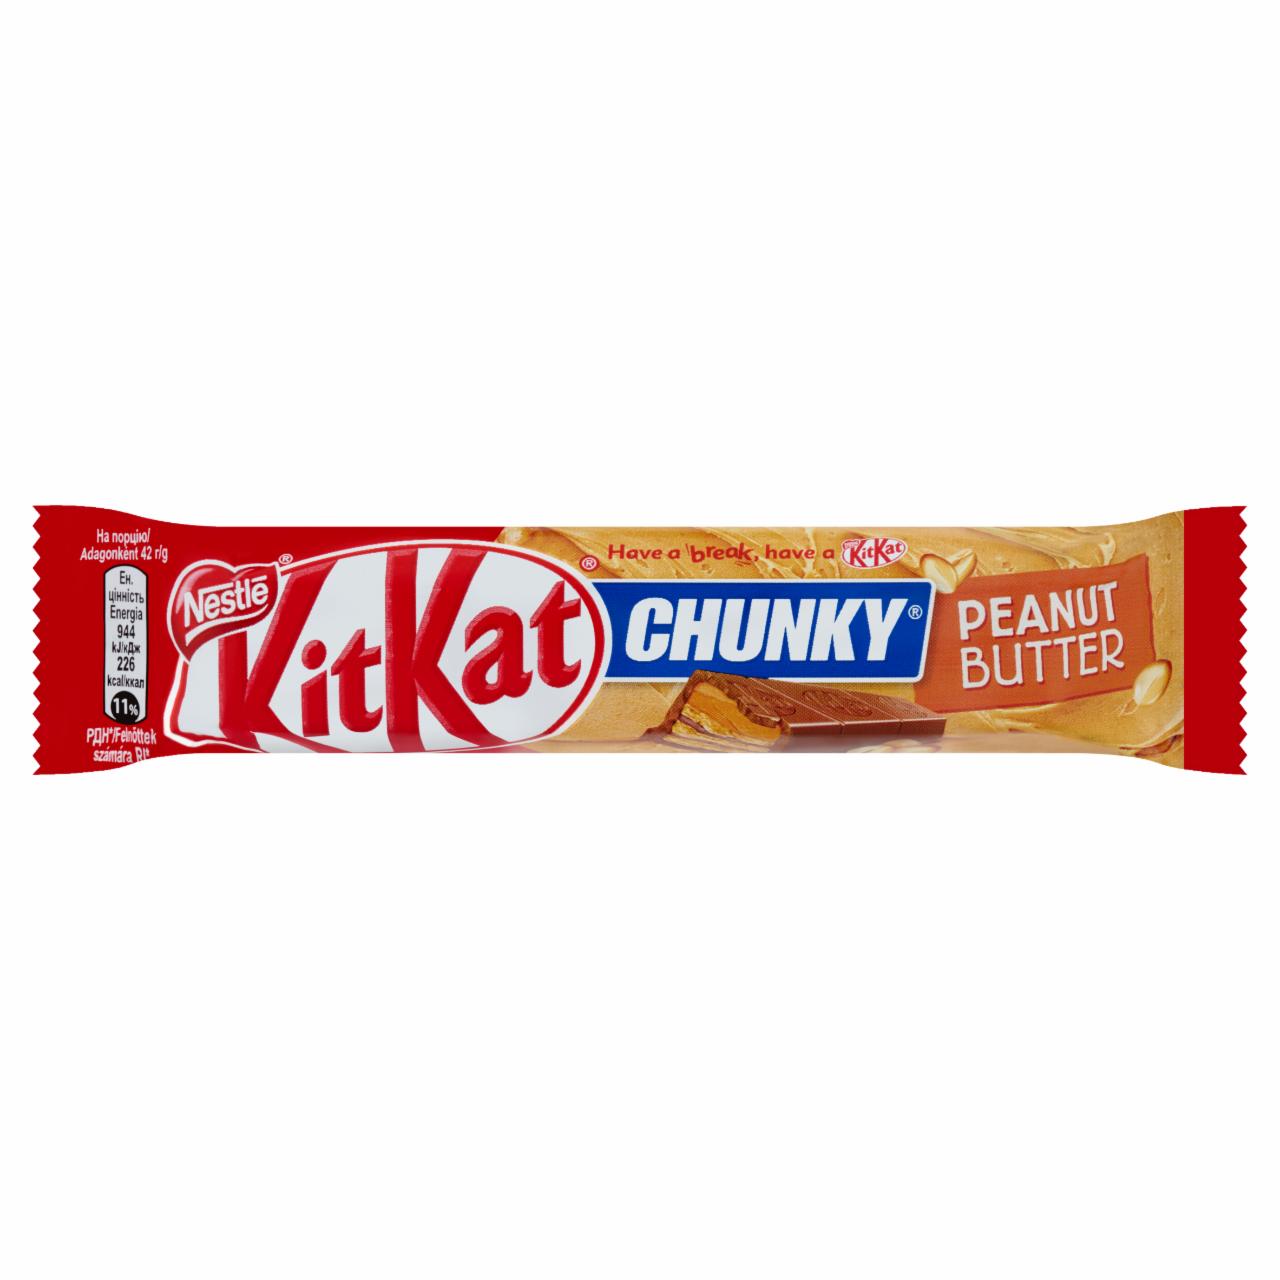 Képek - KitKat Chunky